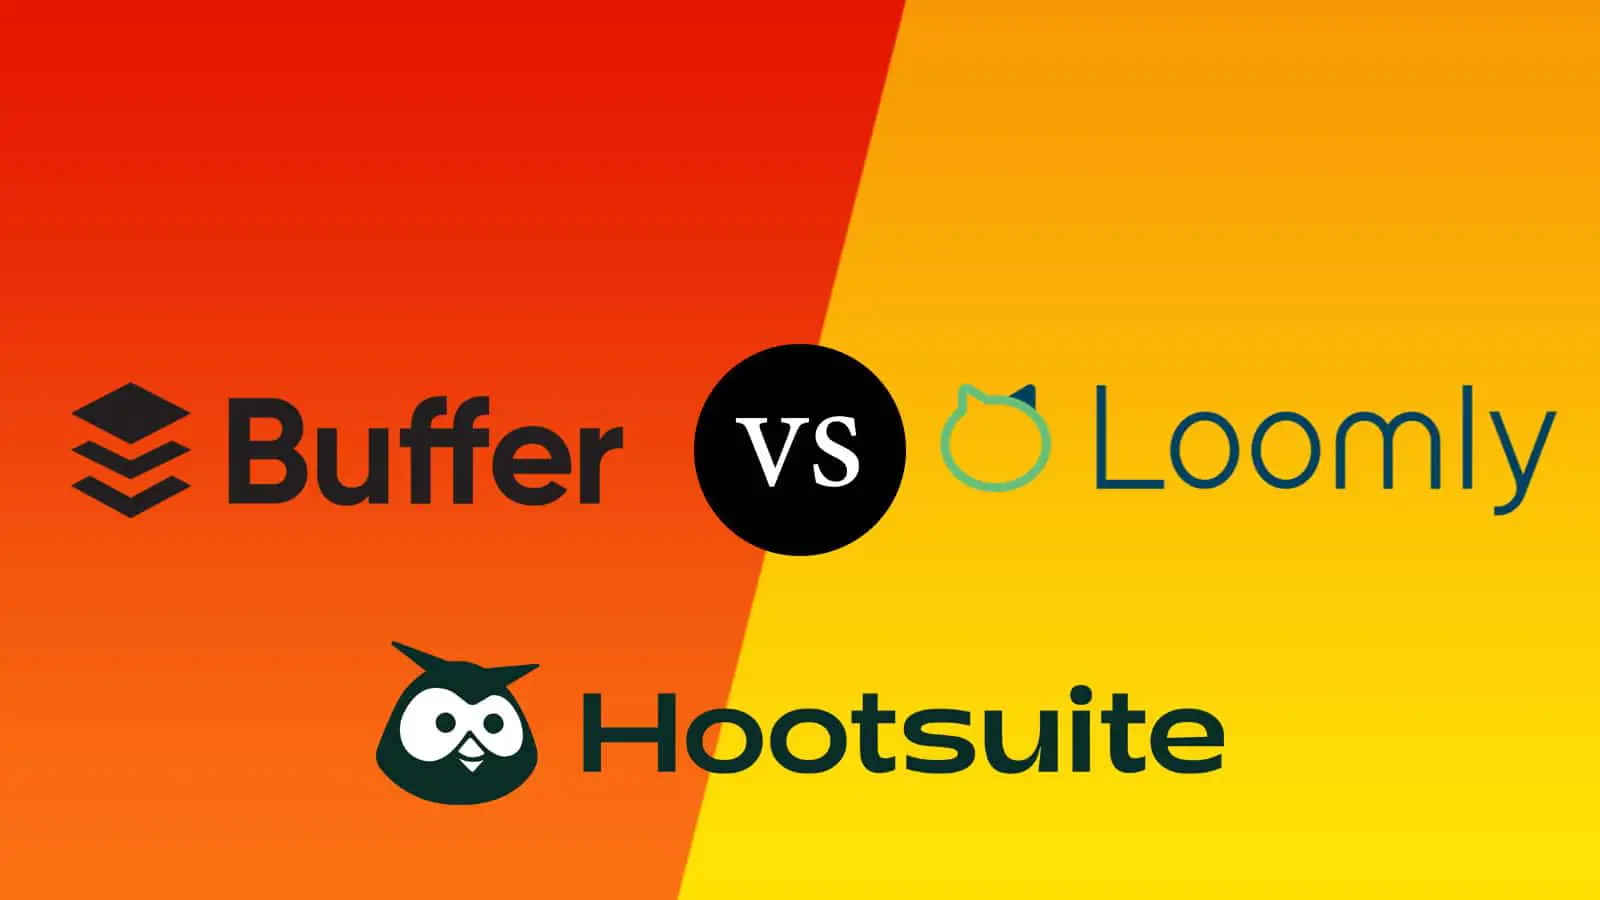 Buffer vs Hootsuite vs Loomly